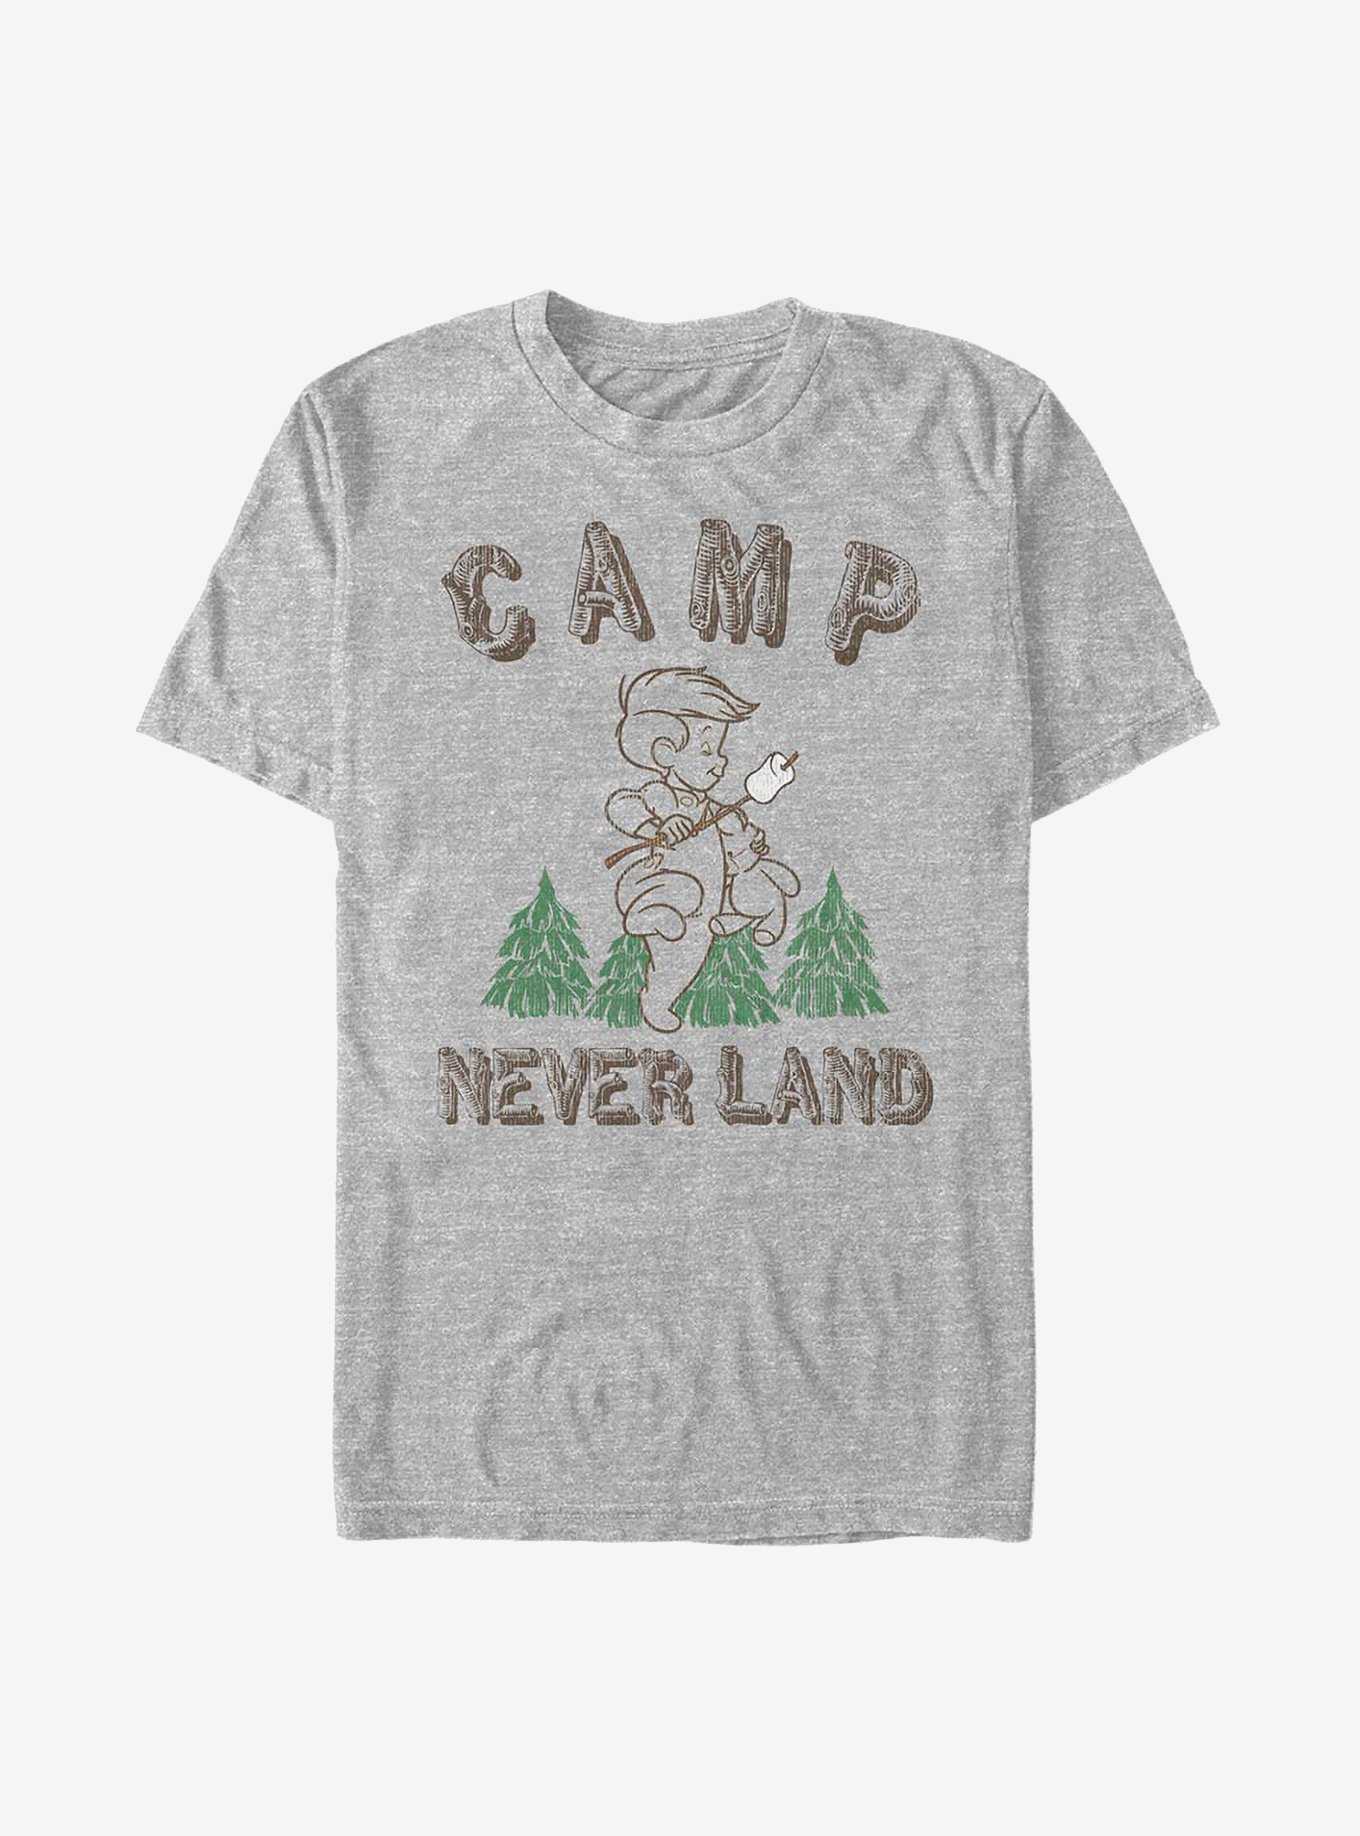 Disney Peter Pan Camp Neverland T-Shirt, , hi-res